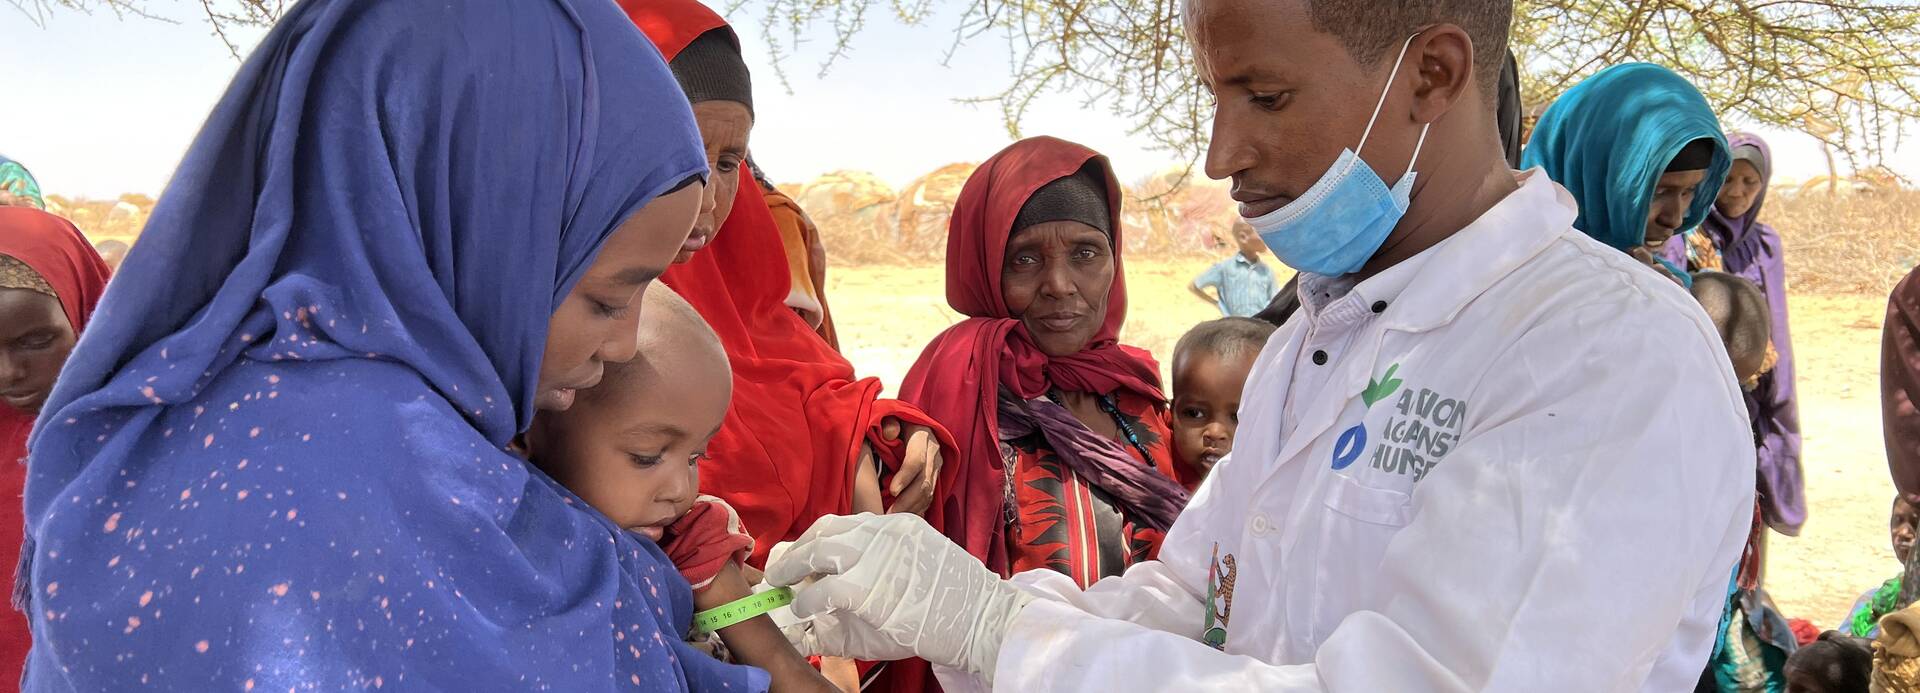 Ein Mitarbeiter von Aktion gegen den Hunger untersucht in Somalia ein Kleinkind auf den Armen seiner Mutter auf Mangelernährung, im Hintergrund warten weitere Mütter mit Kindern.